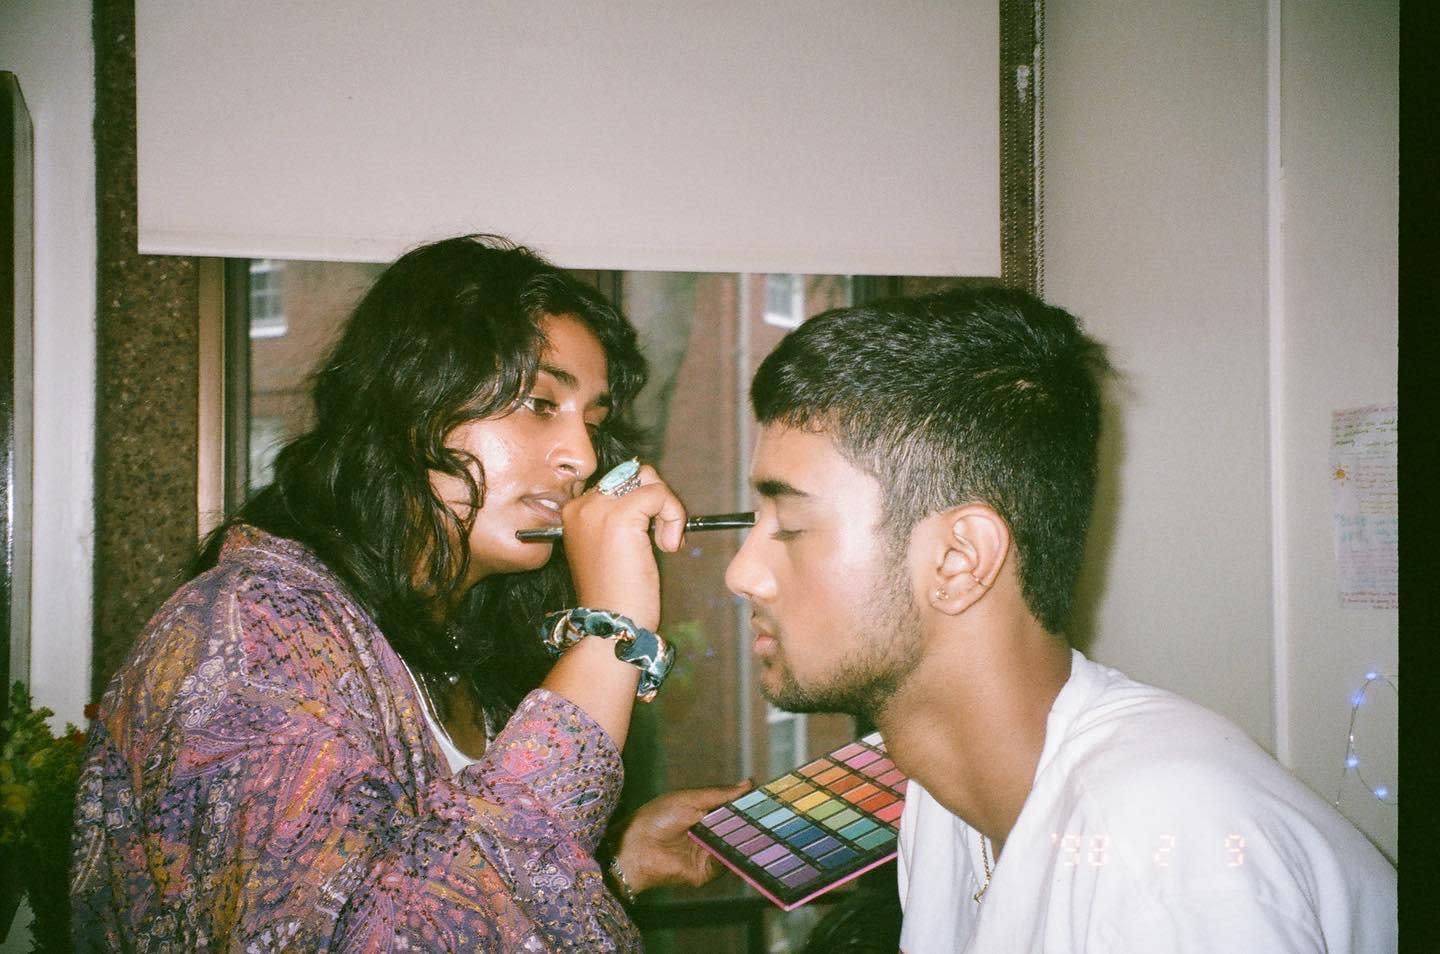 Bhargavi Garimella putting eye makeup on me.